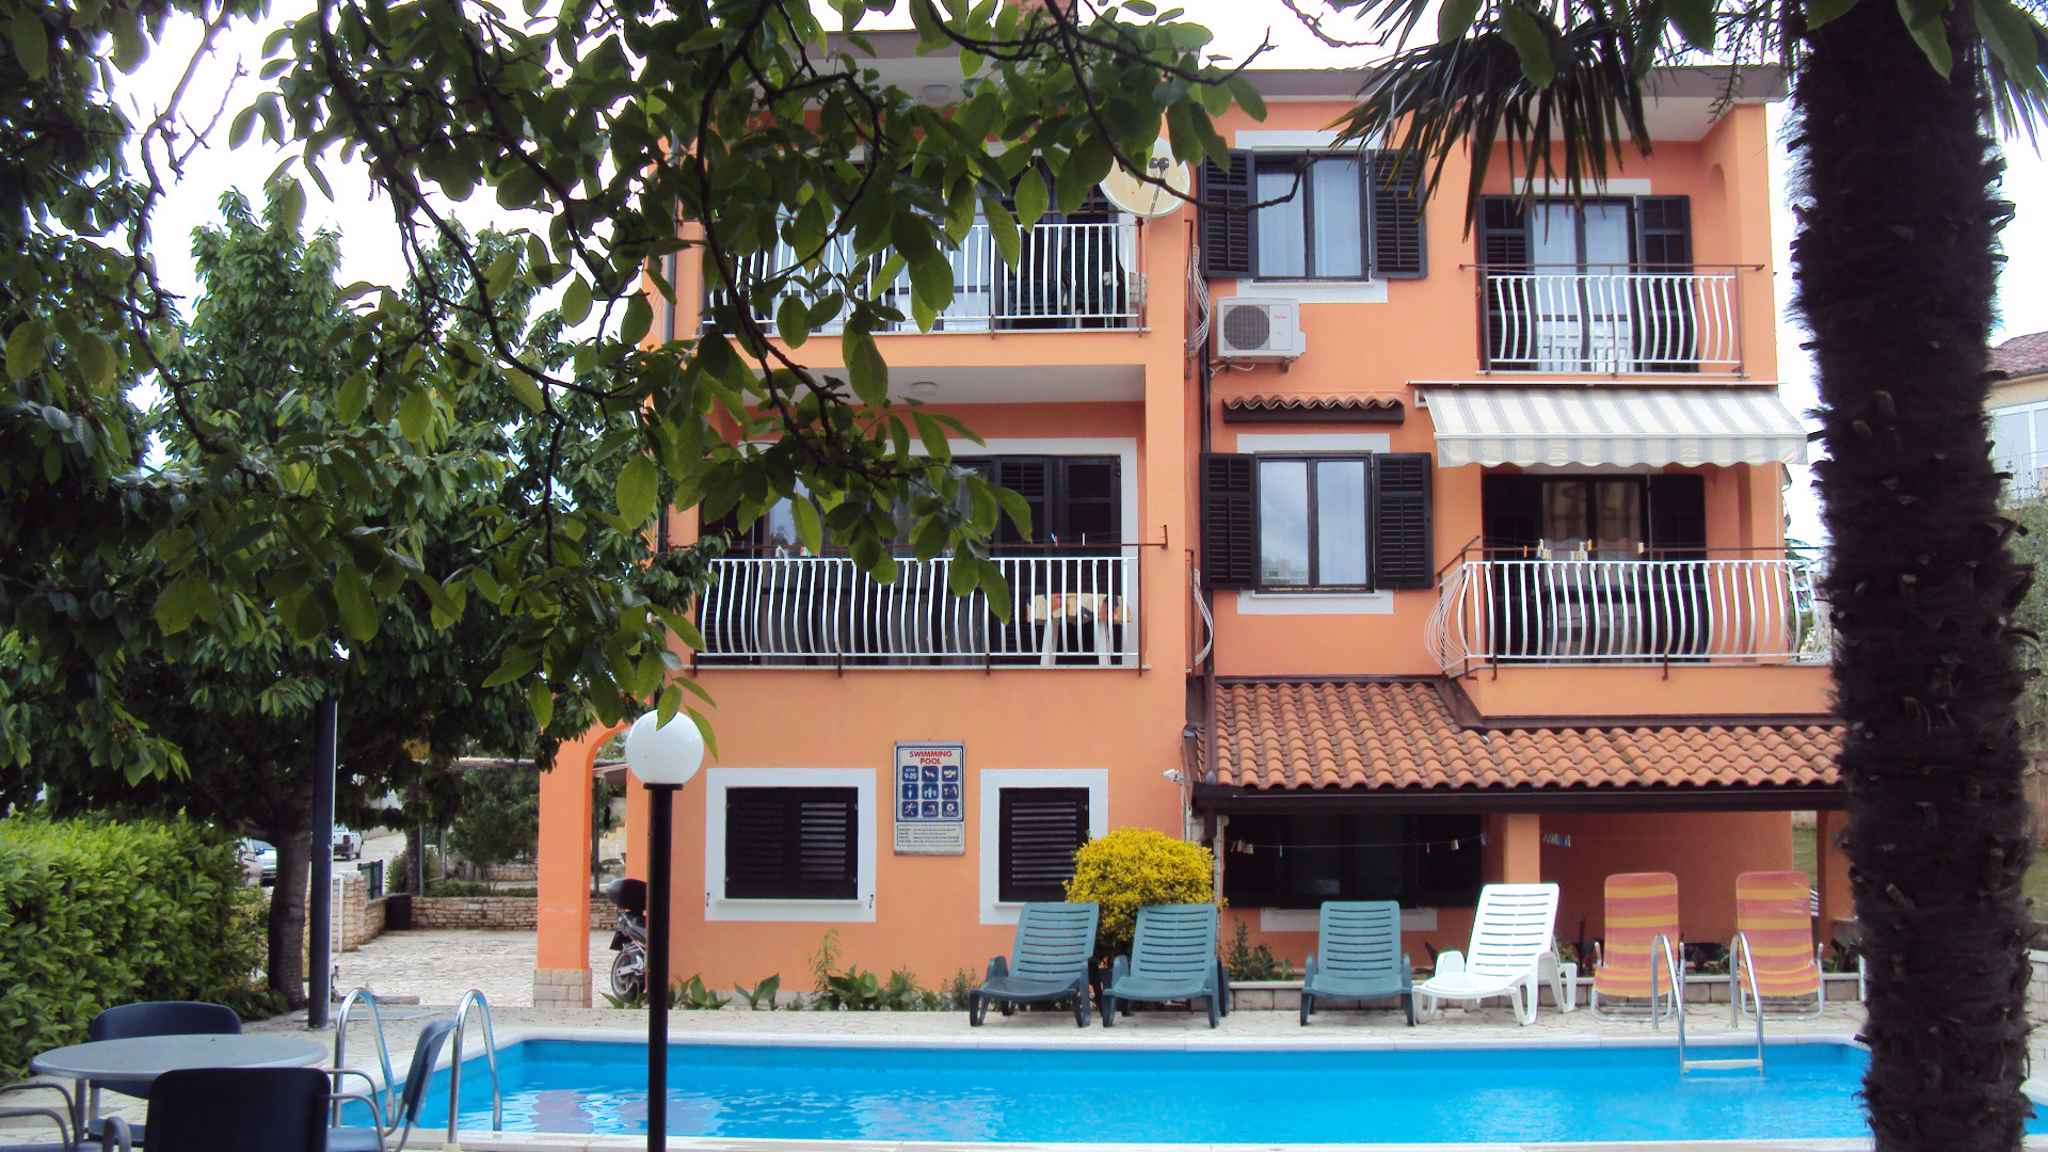 Ferienwohnung mit gemeinsamen Pool und Garten  in Istrien